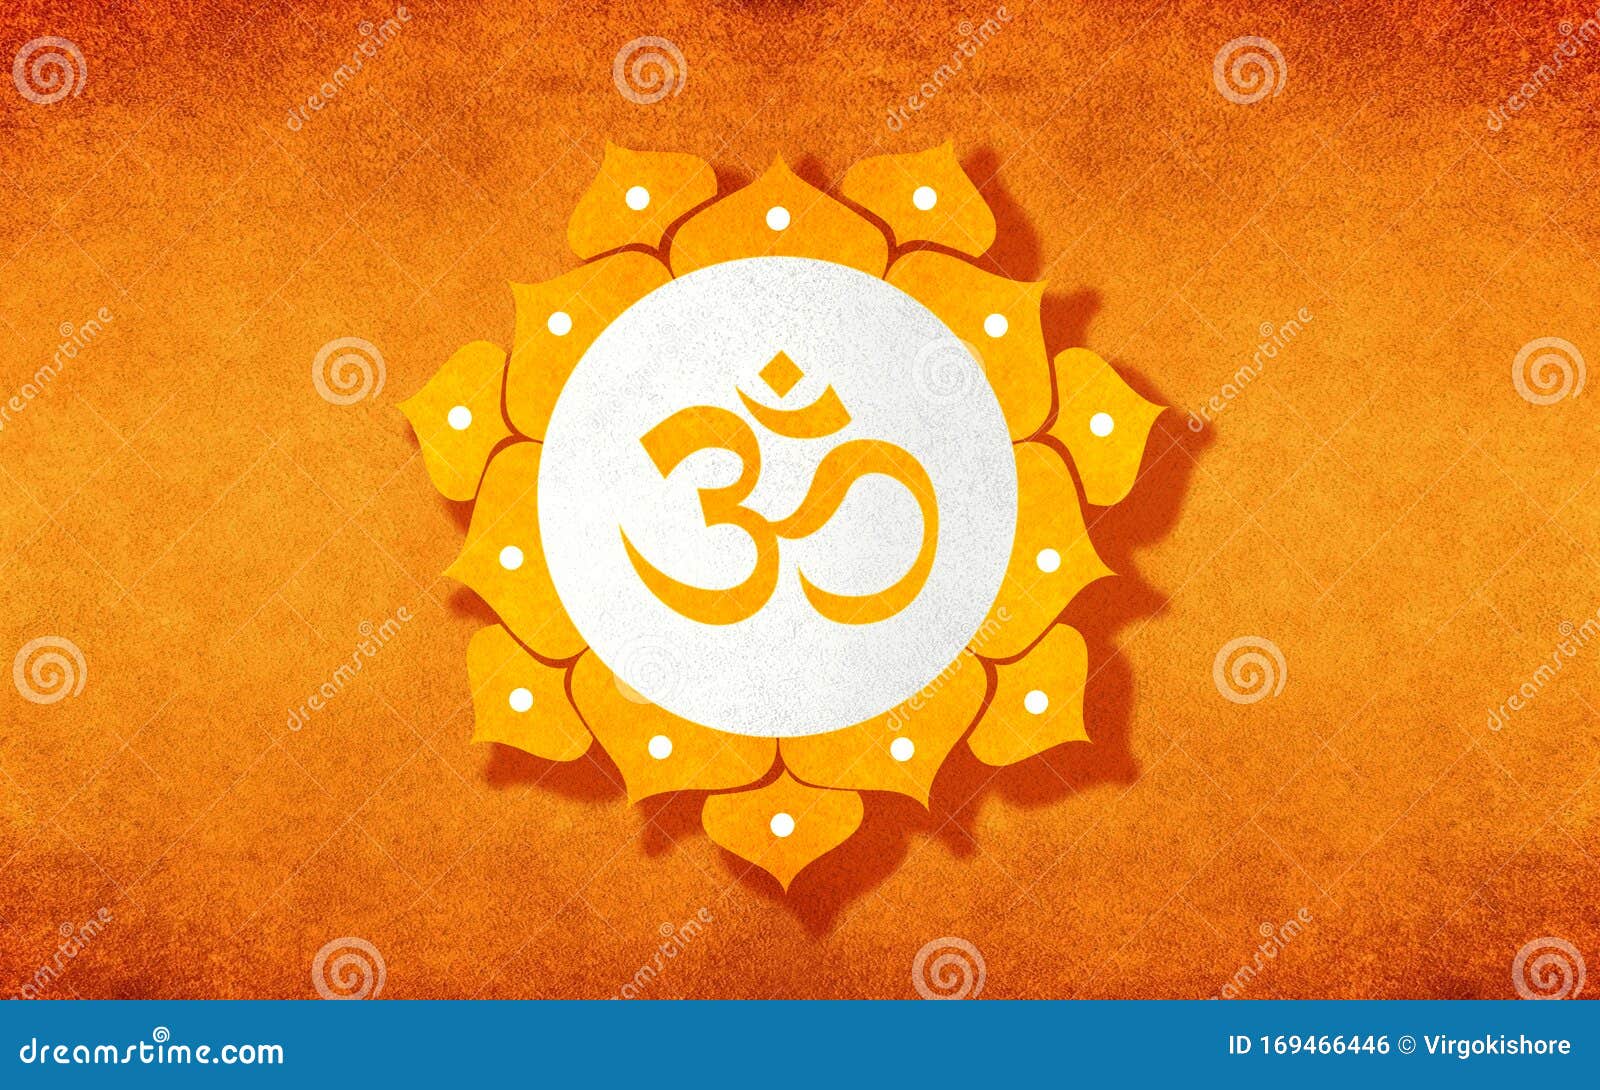 Cờ màu cam với ký hiệu Om: Trong tín ngưỡng Hindu, ký hiệu Om mang ý nghĩa rất thiêng liêng và linh thiêng. Khi được kết hợp với màu cam trên chiếc cờ, nó tạo nên một tác phẩm nghệ thuật đầy sáng tạo và độc đáo. Hãy ngắm nhìn bức hình này và cảm nhận tình yêu và sự tôn kính đối với tín ngưỡng này.